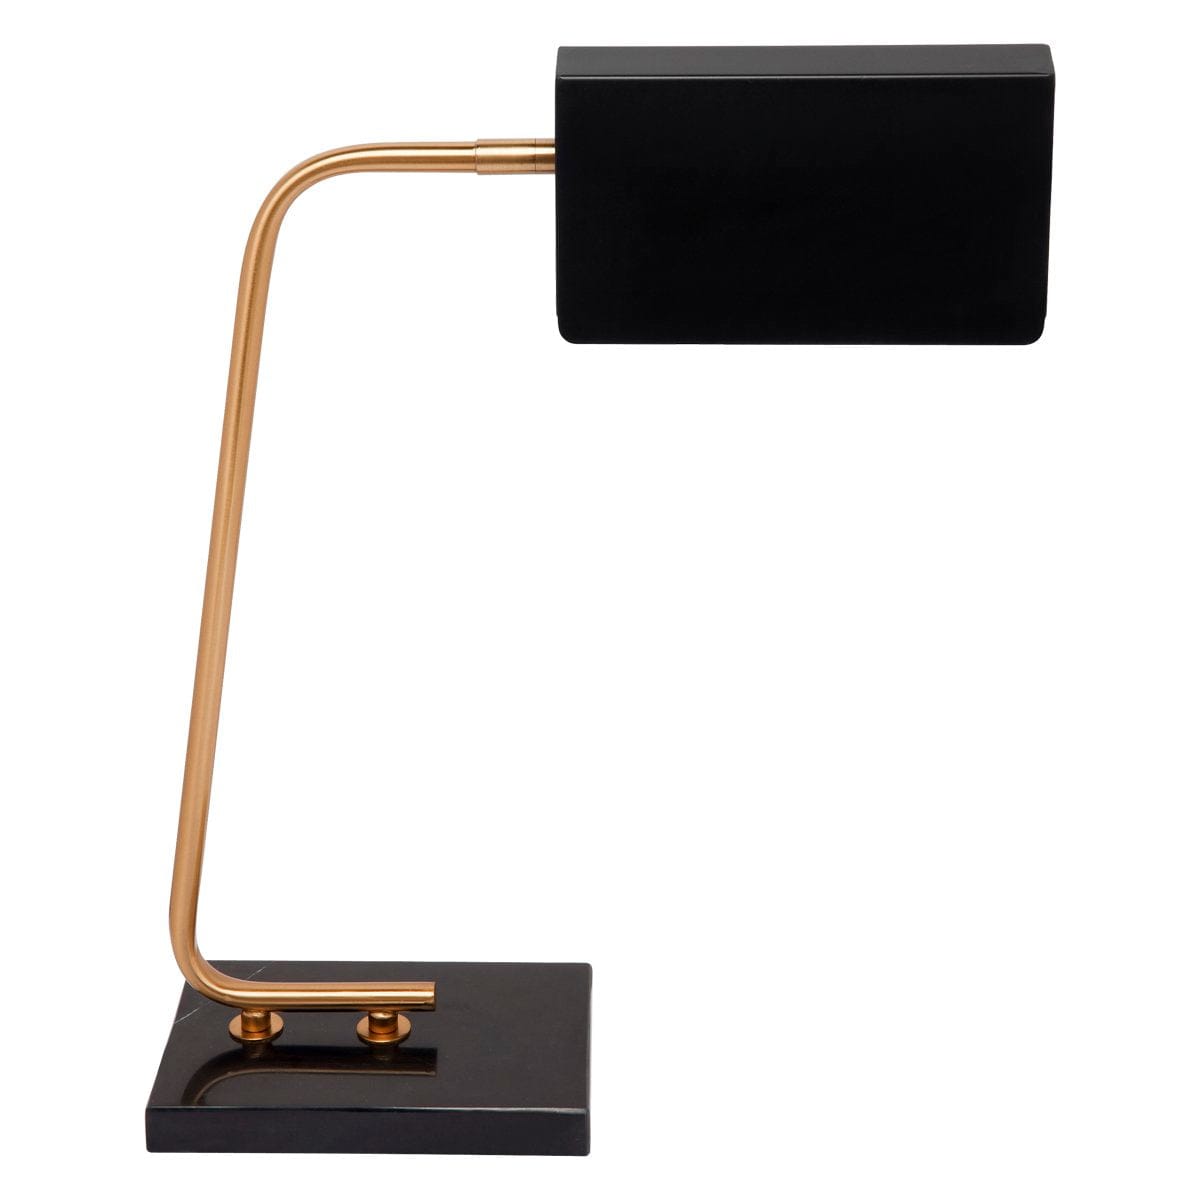 CAFE LIGHTING & LIVING Table Lamp Belfast Marble Desk Lamp - Black 12350